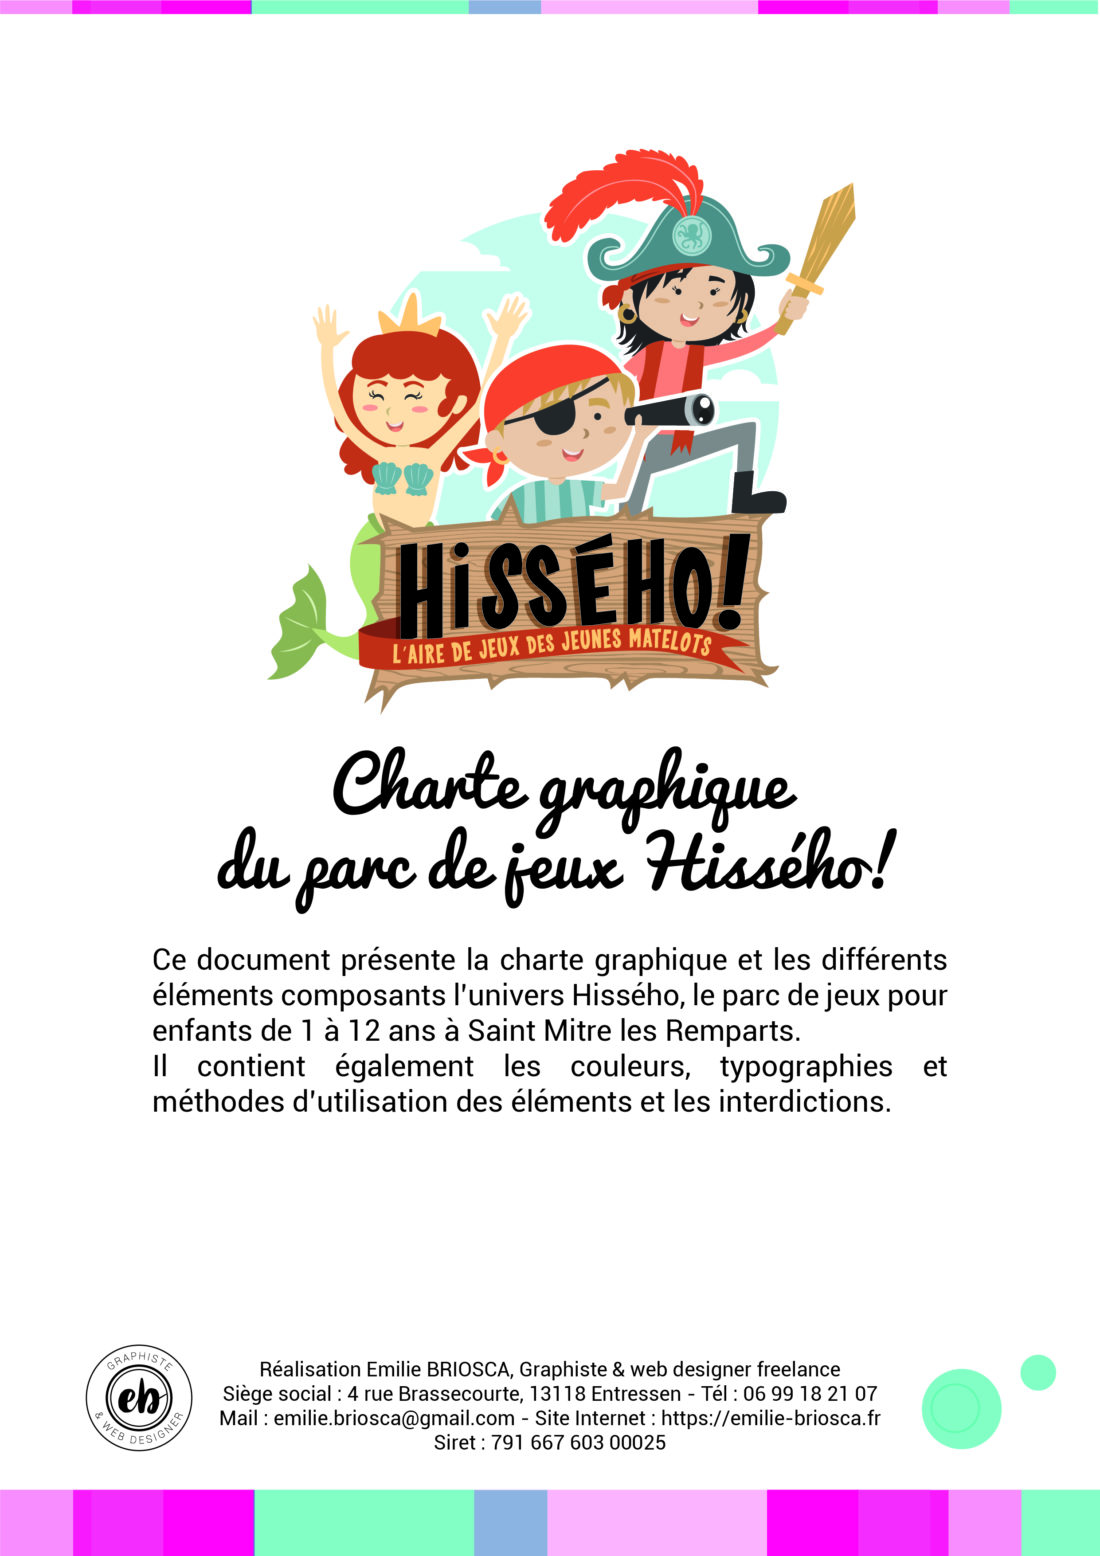 Hissého! - création charte graphique par graphiste à Saint Mitre les Remparts